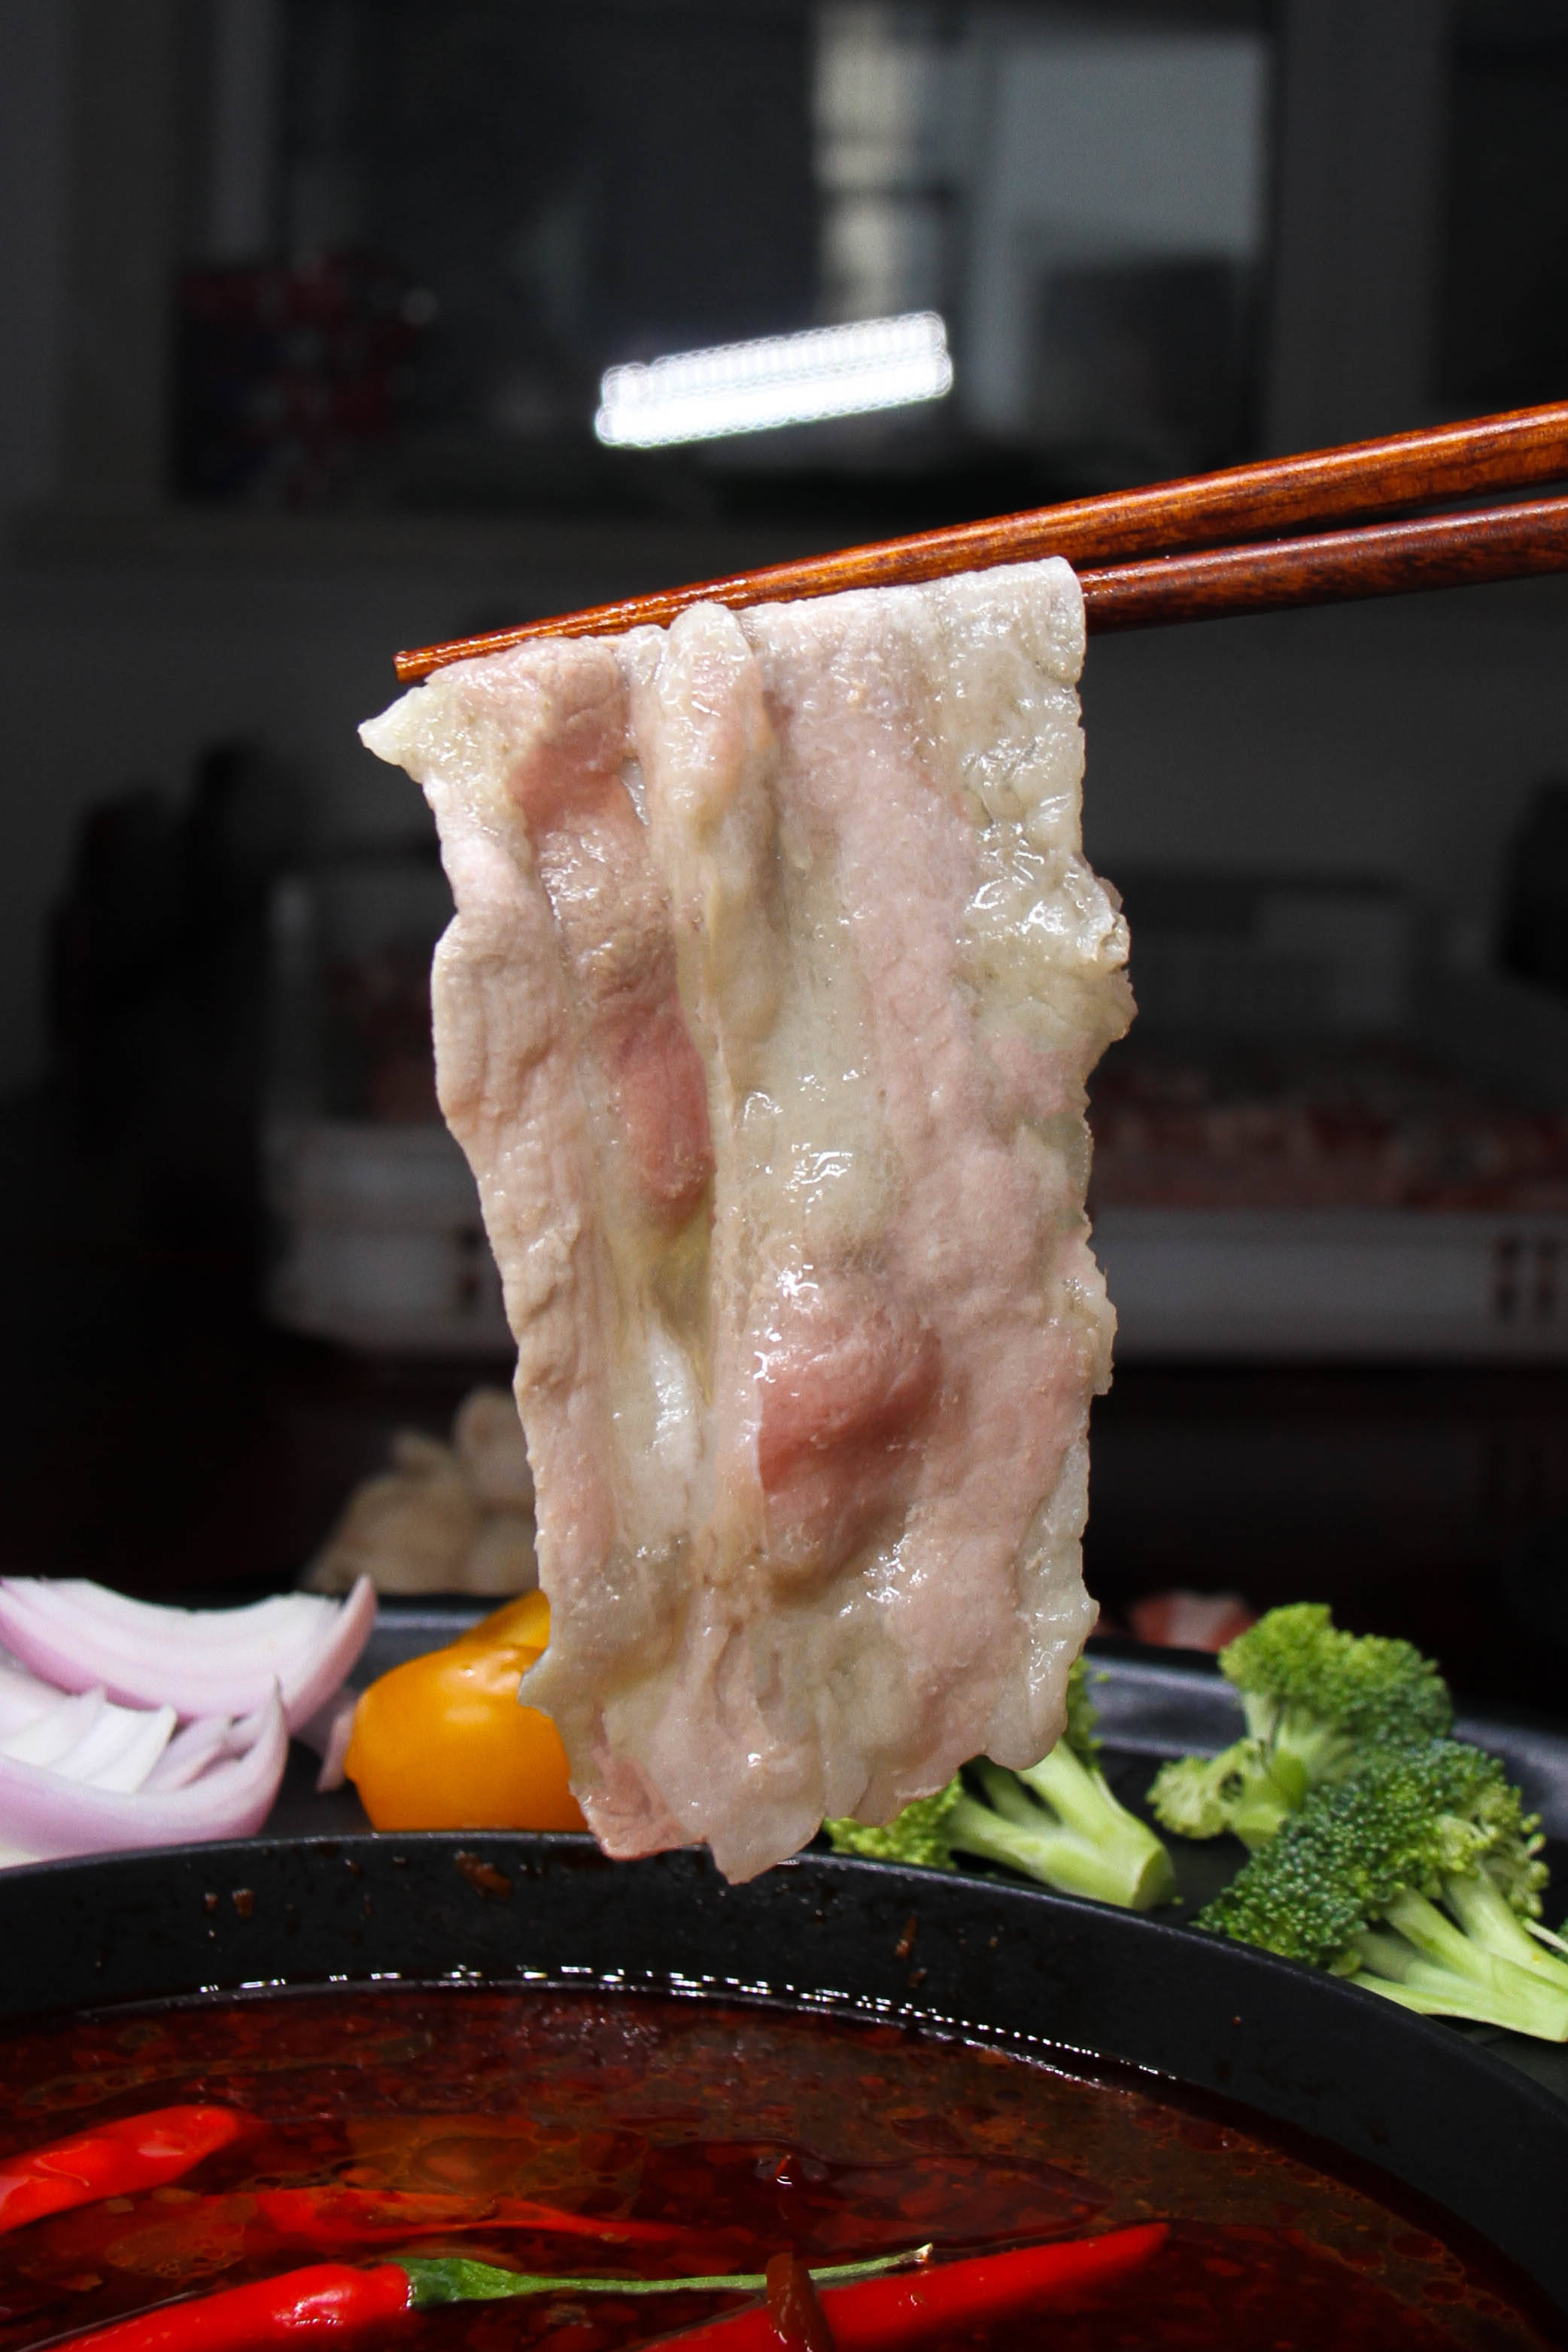 火锅专用牛肉-肥牛批发-冻牛肉批发价格-海之隆